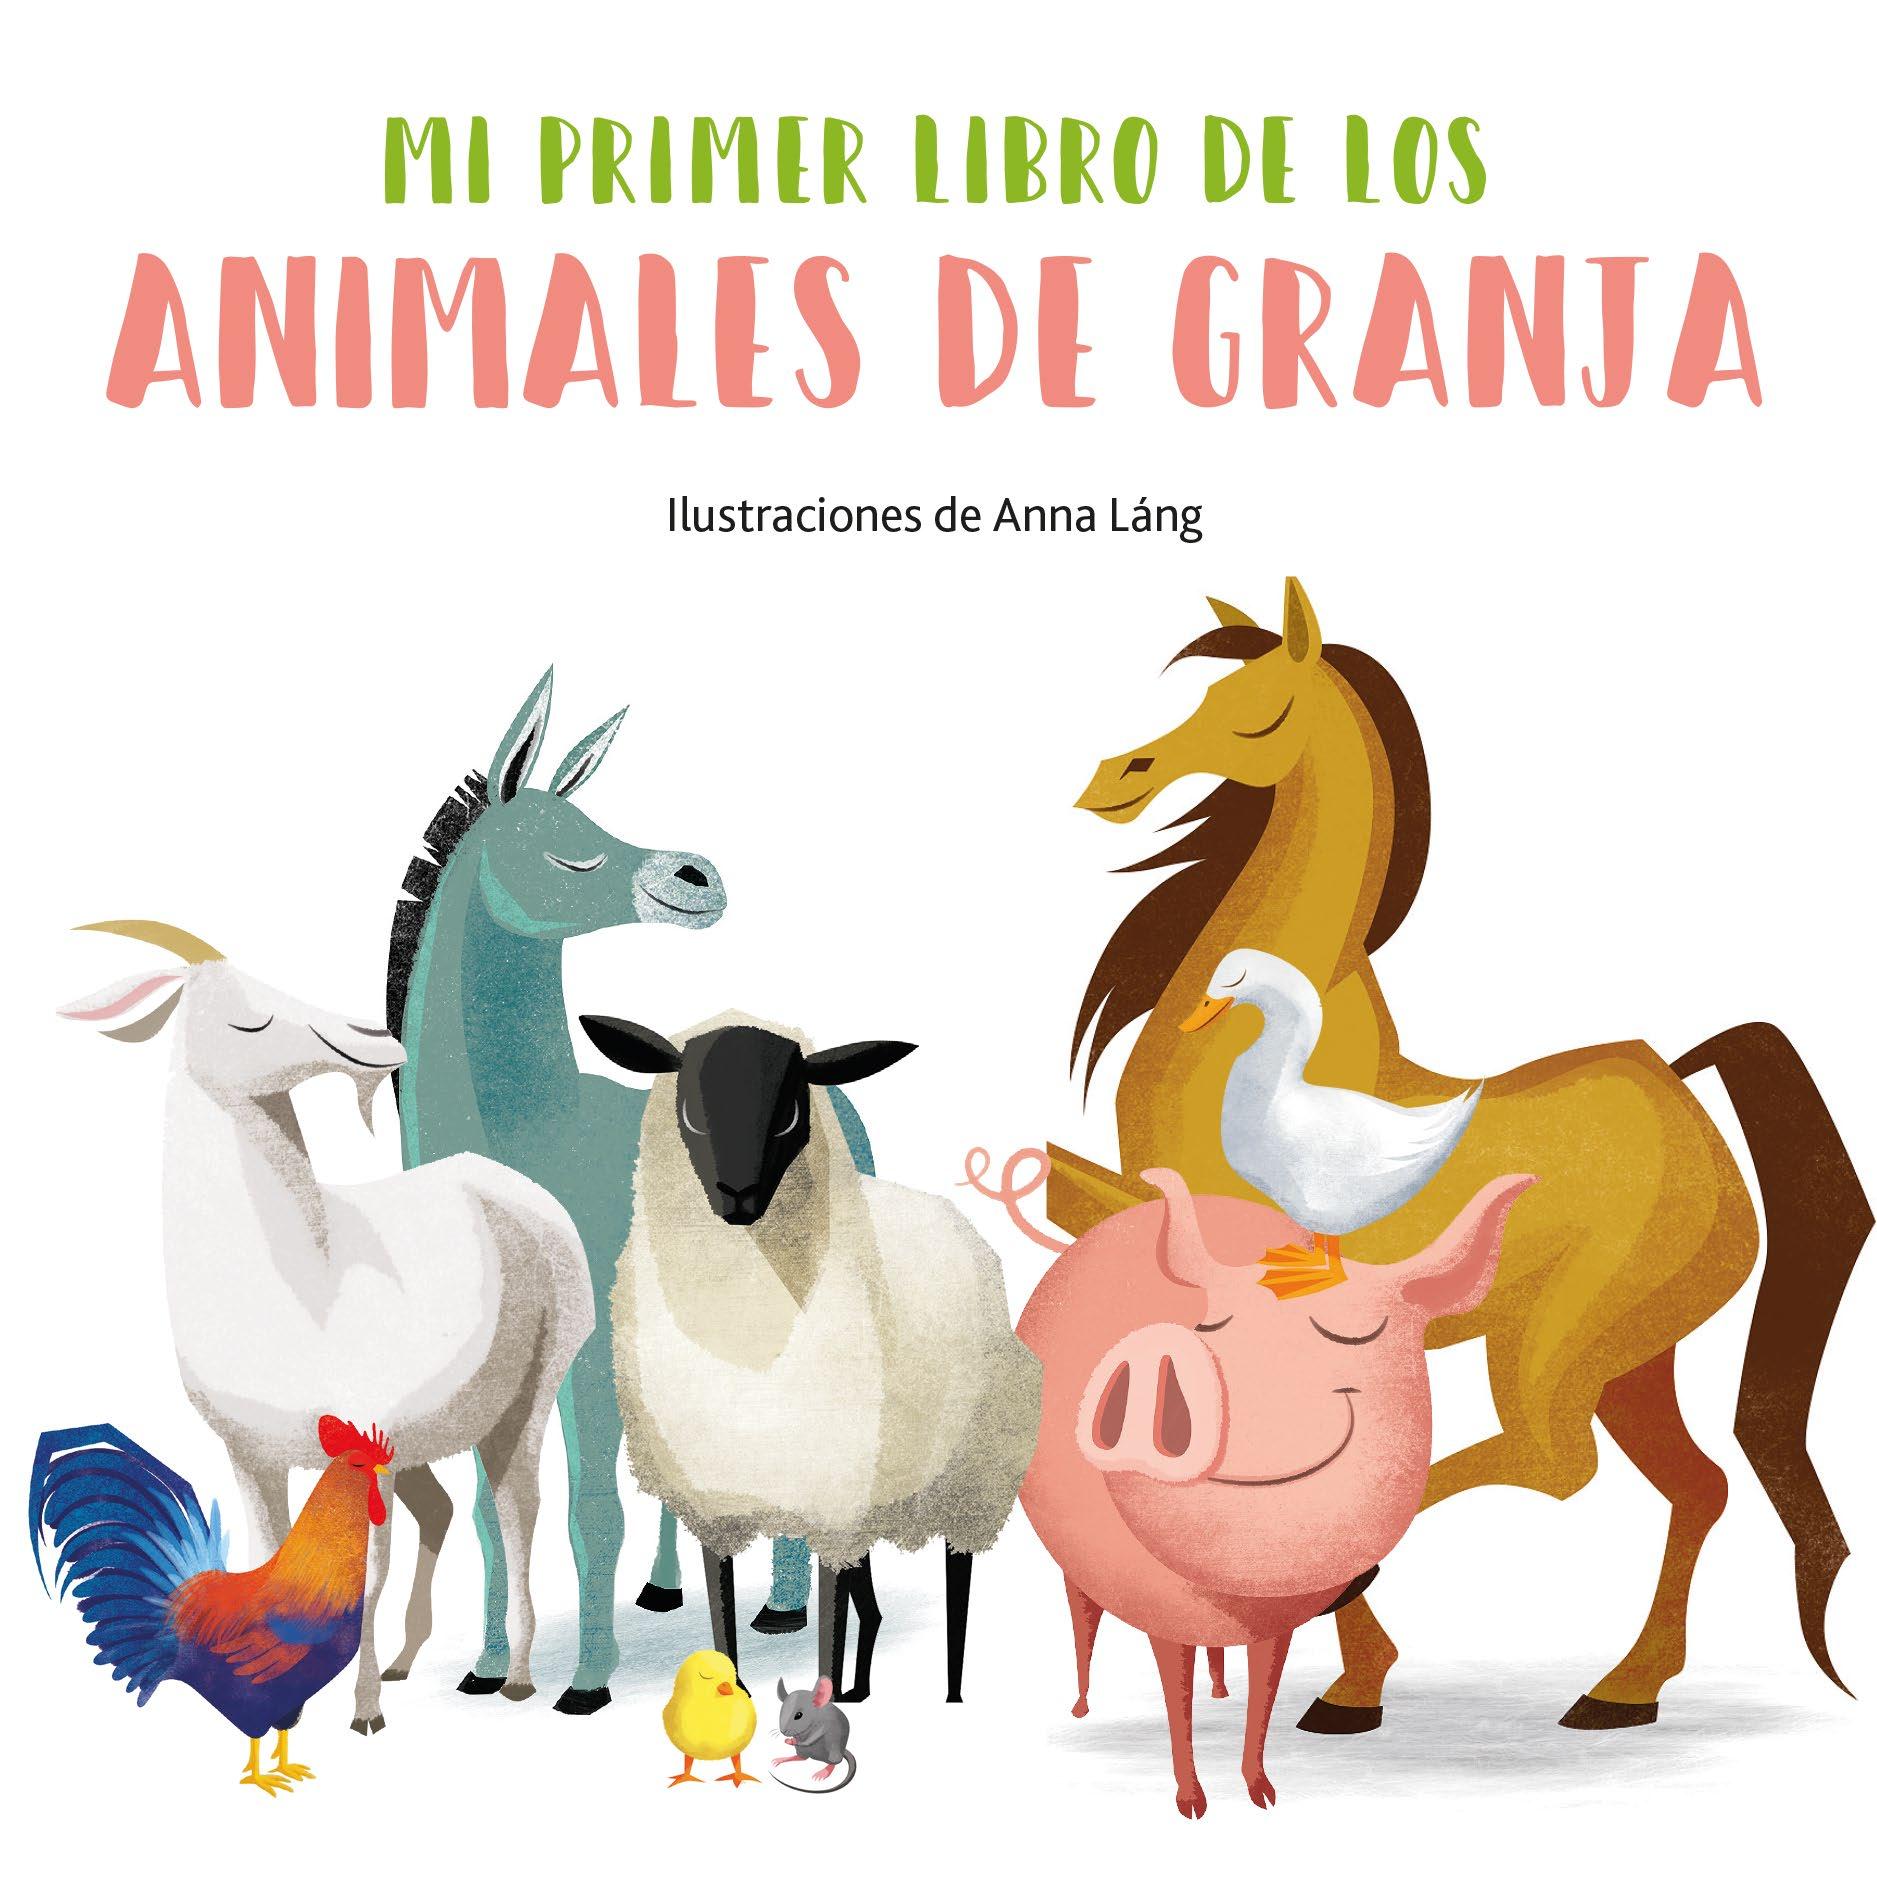 En estos libros se da especial importancia a la ilustración para que los lectores más pequeños aprendan a identificar los animales por sus nombres y a diferenciarlos según el entorno en el que viven. Así